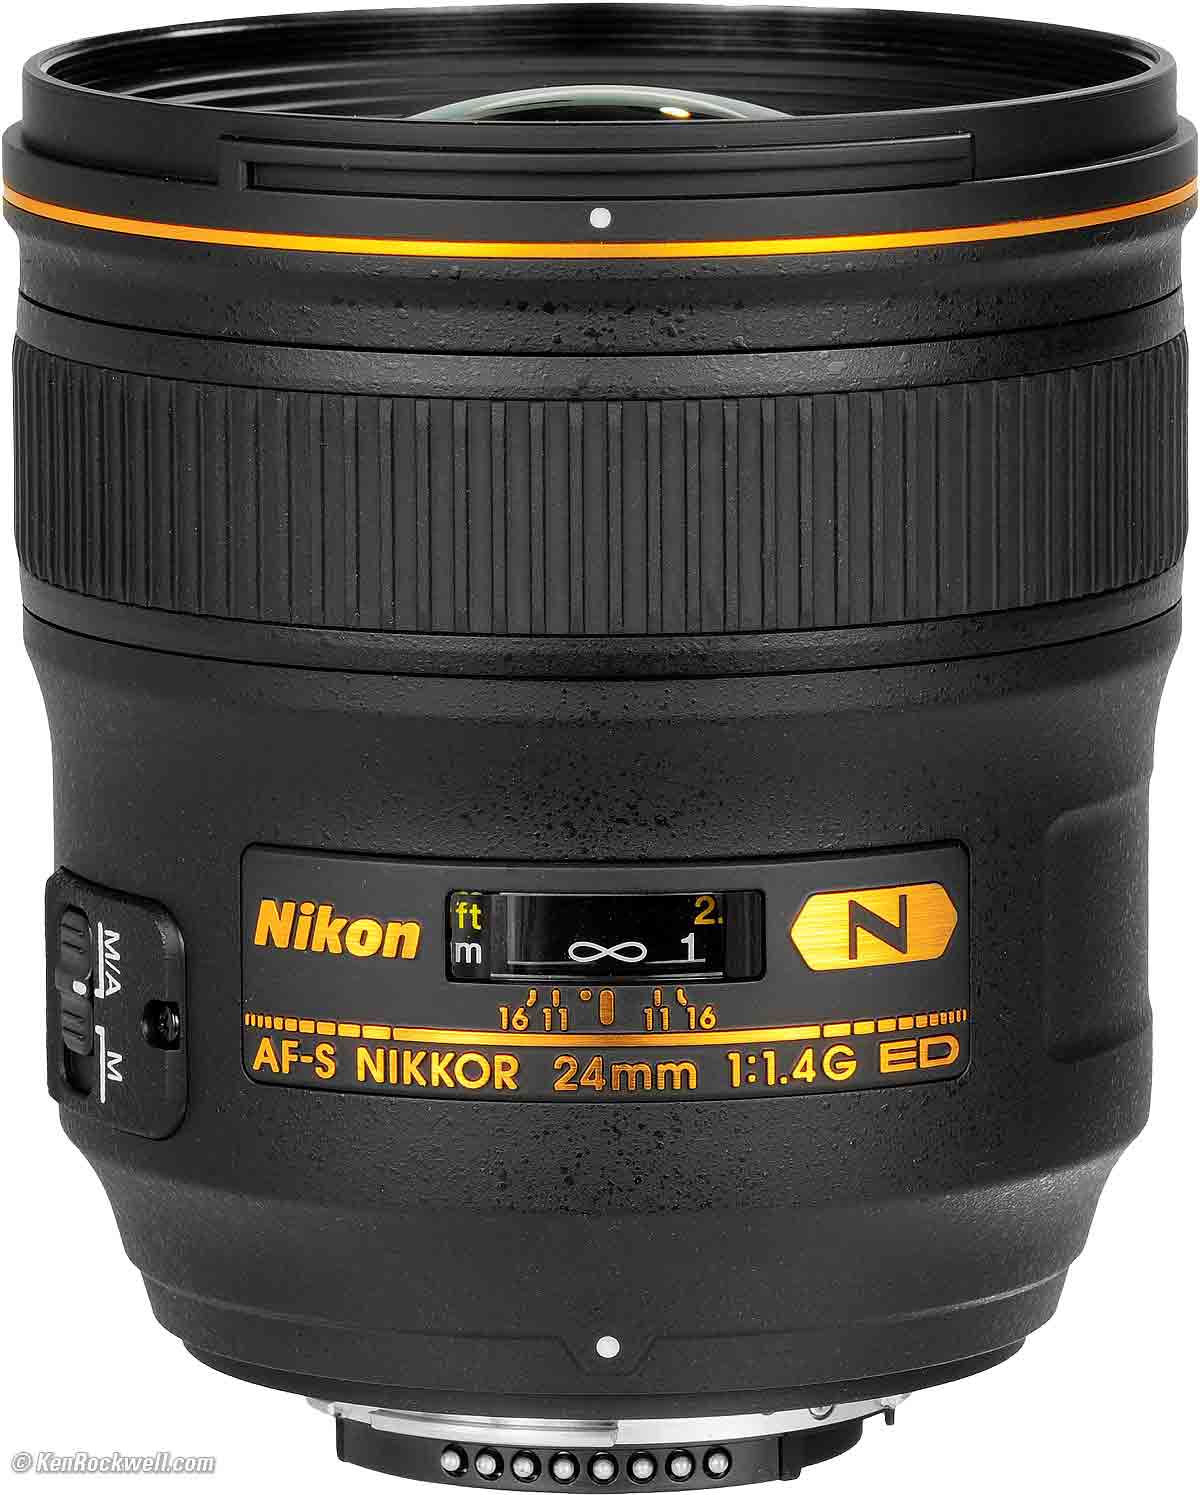 Nikon Ai Nikkor 35mm f/1.4S